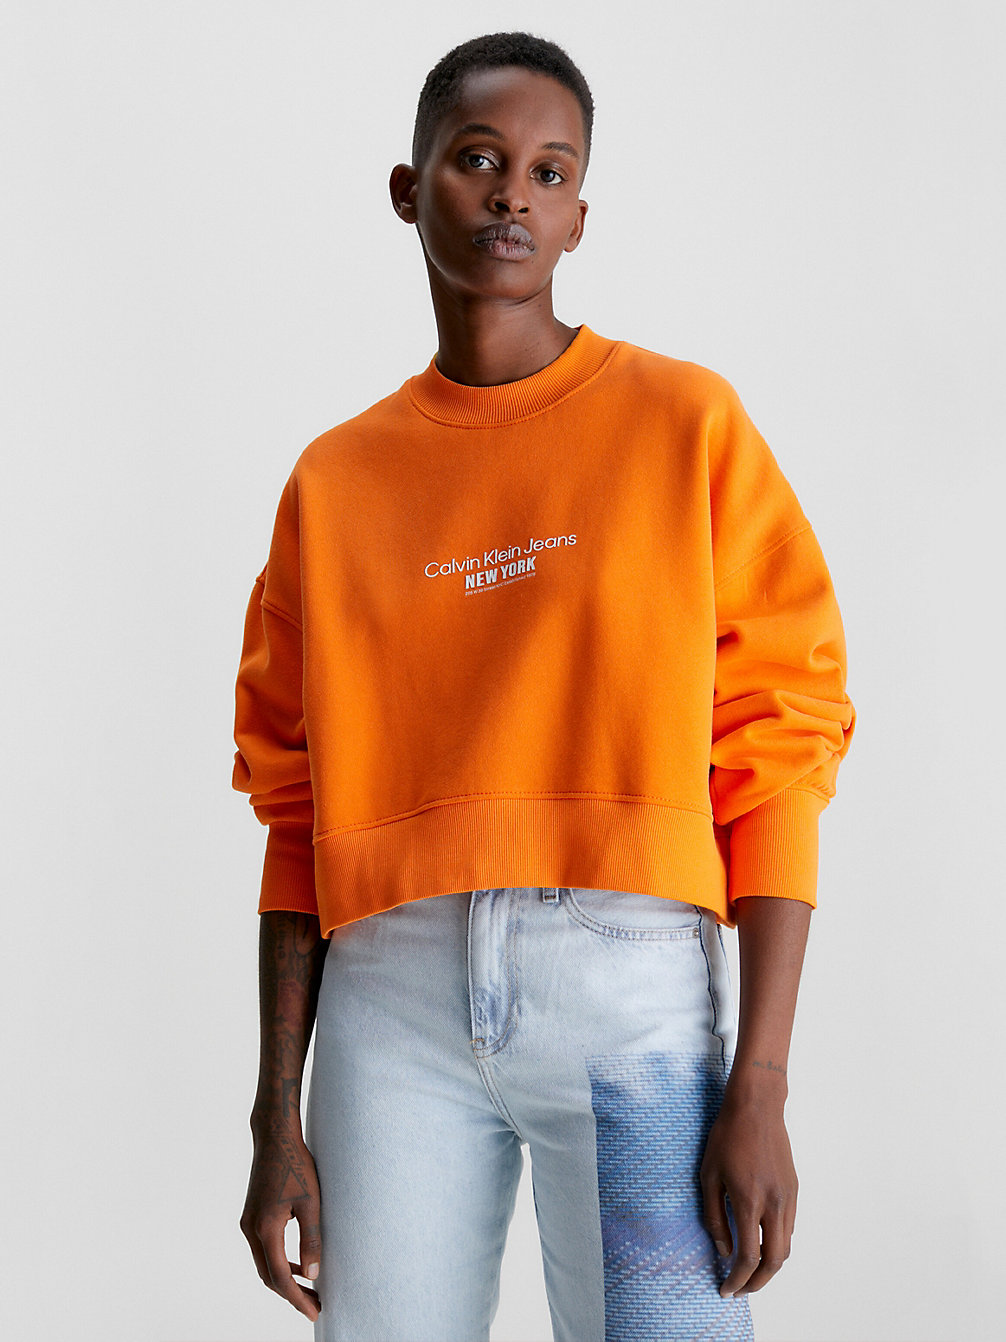 VIBRANT ORANGE Cropped Embroidered Sweatshirt undefined women Calvin Klein